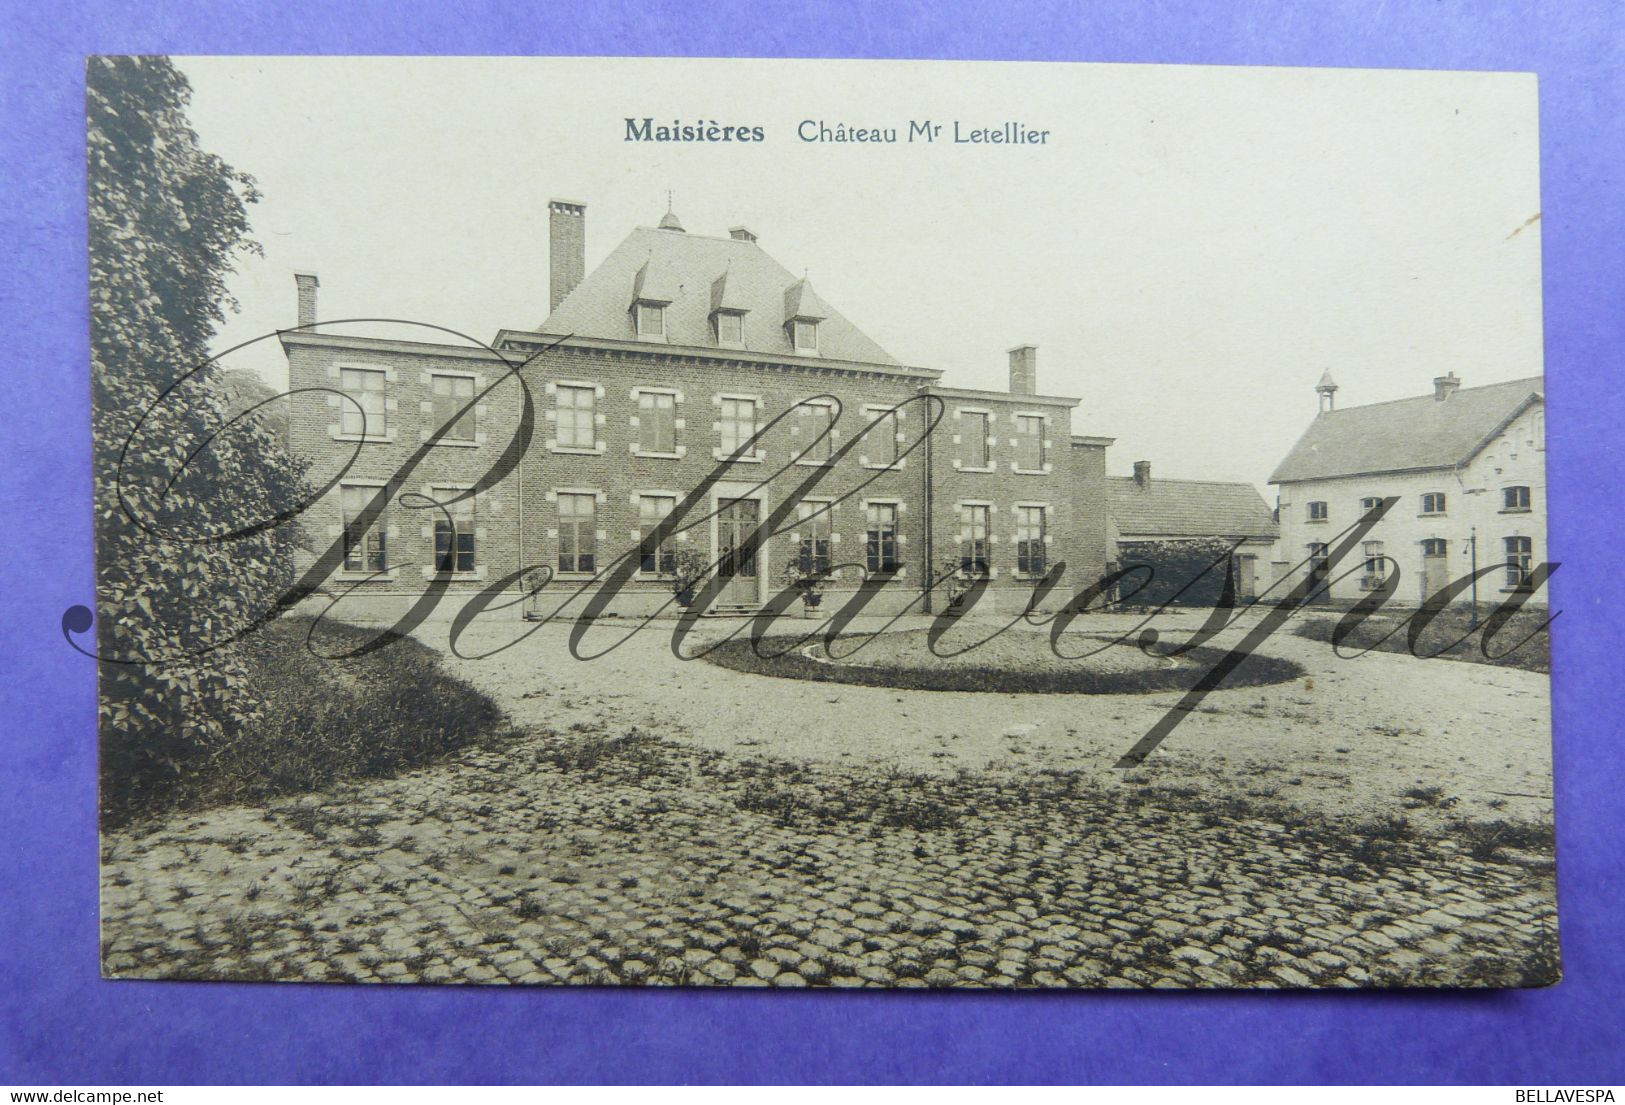 Maisières Chateau Mr Letellier - Mons